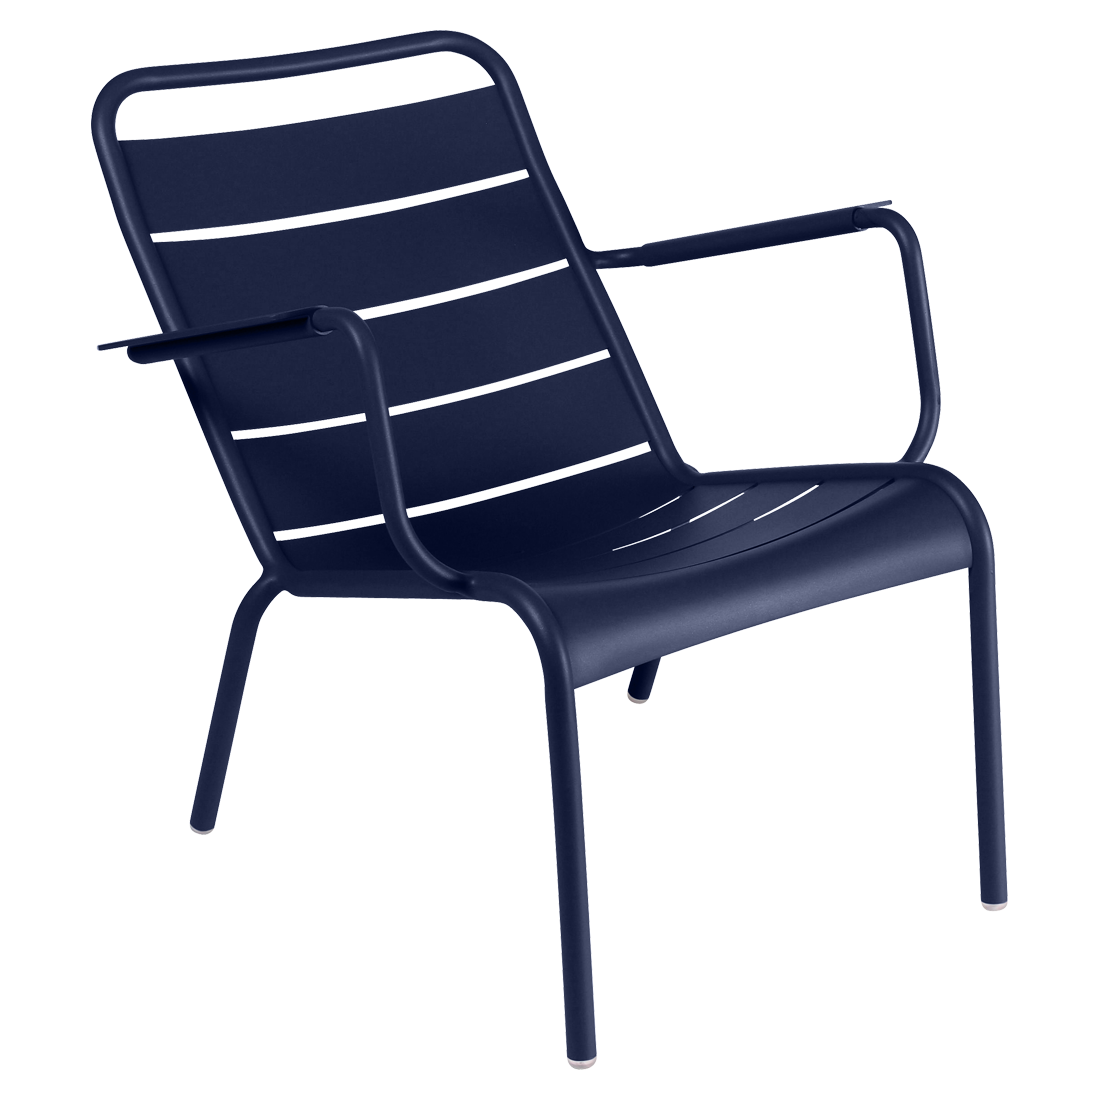 fauteuil de jardin, fauteuil metal, salon de jardin, fauteuil luxembourg, fauteuil fermob, fauteuil bleu